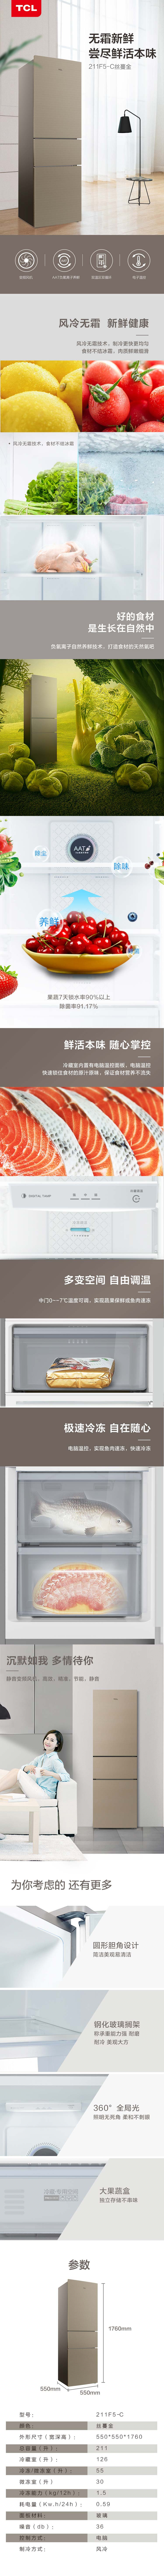 【成都邮政】TCL  211F5-C三门风冷 211升 冰箱 预售